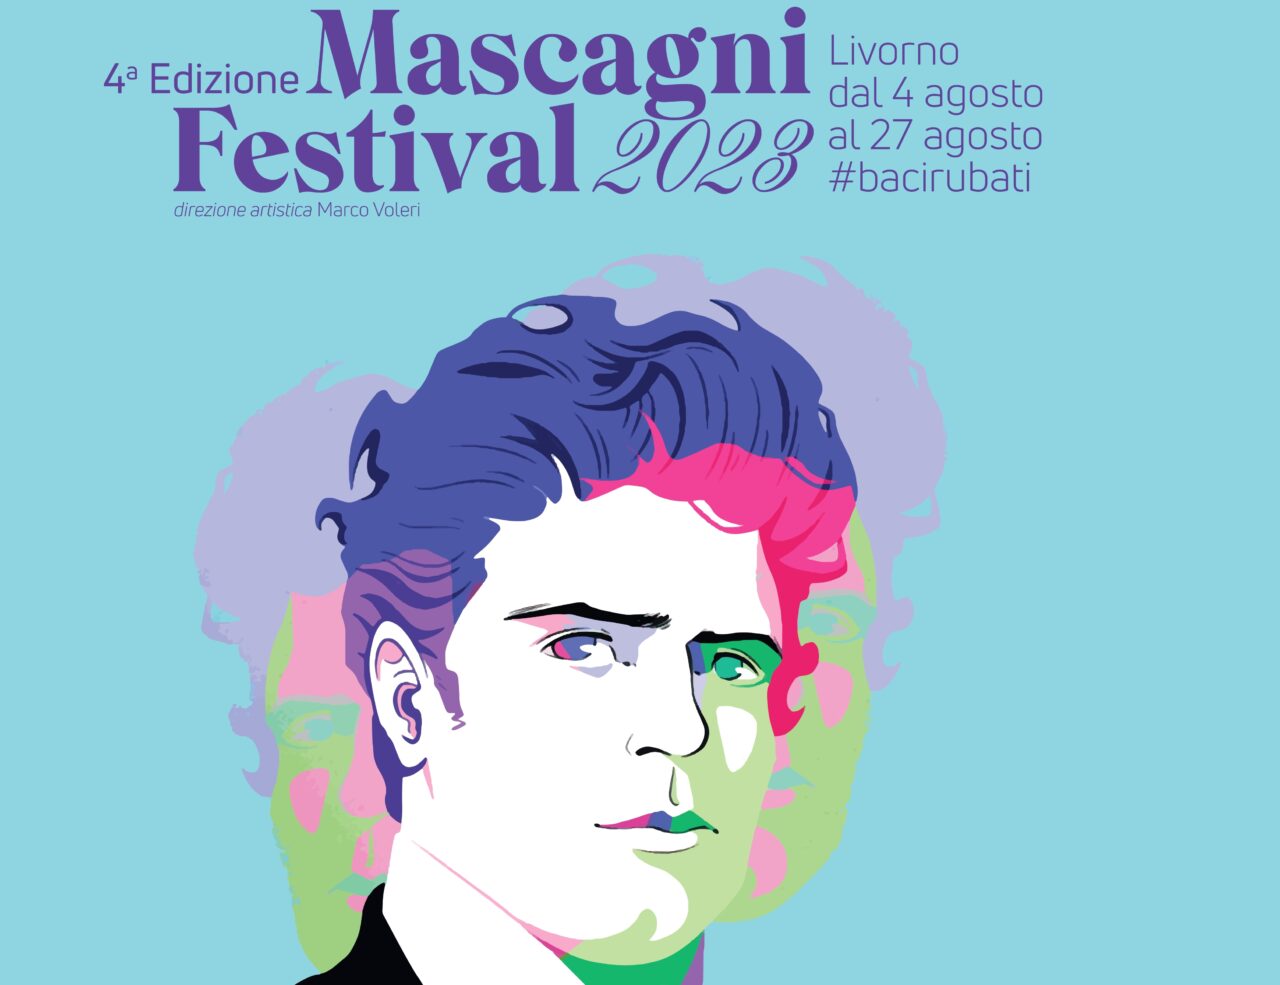 Mascagni Festival, i ristoratori invitati a celebrare il celebre compositore con menù a tema